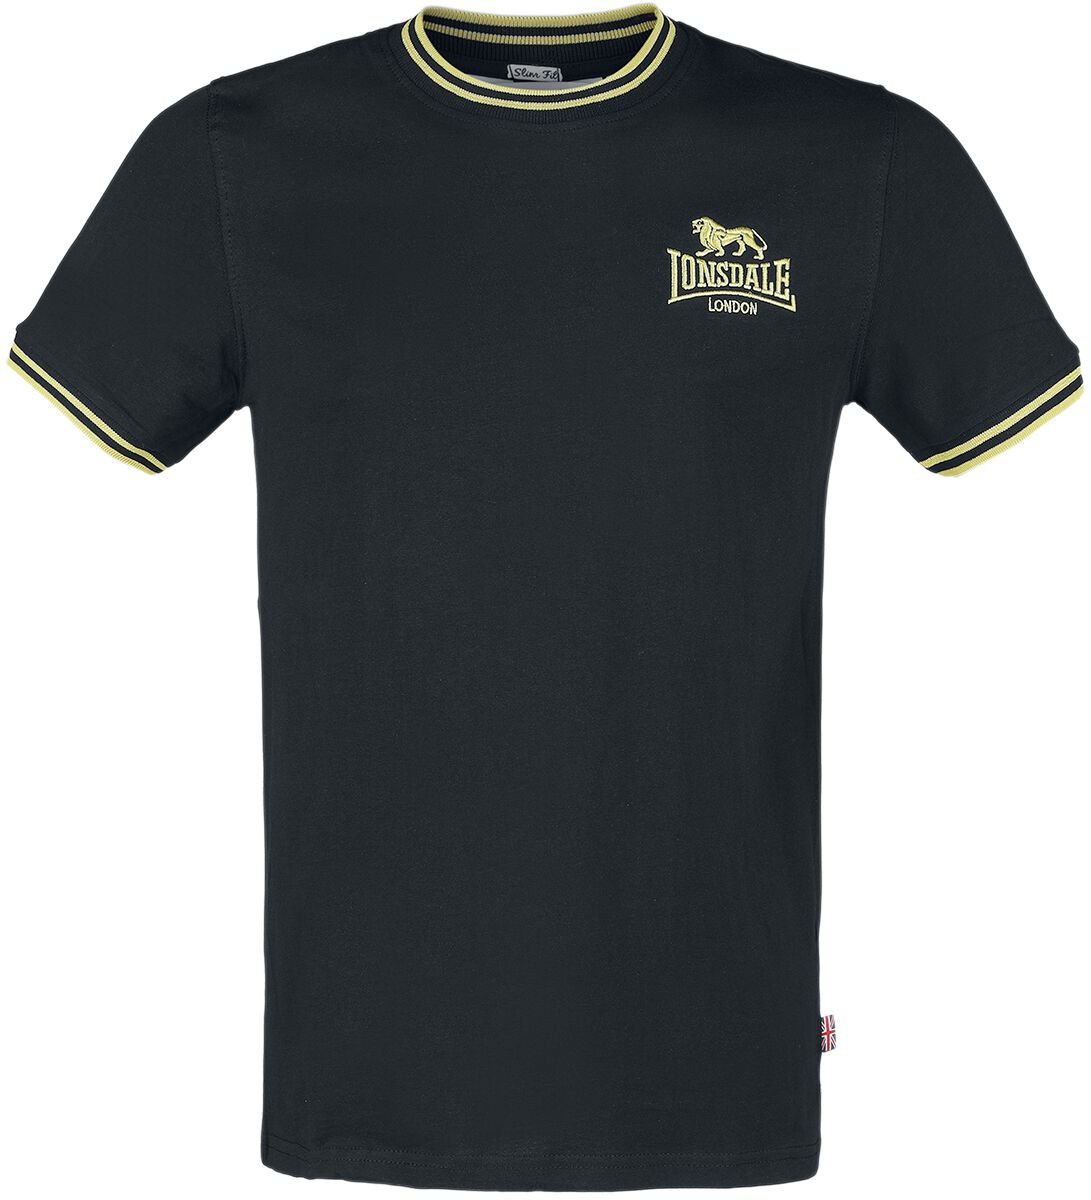 Lonsdale London T-Shirt - DUCANSBY - S bis XXL - für Männer - Größe XXL - schwarz